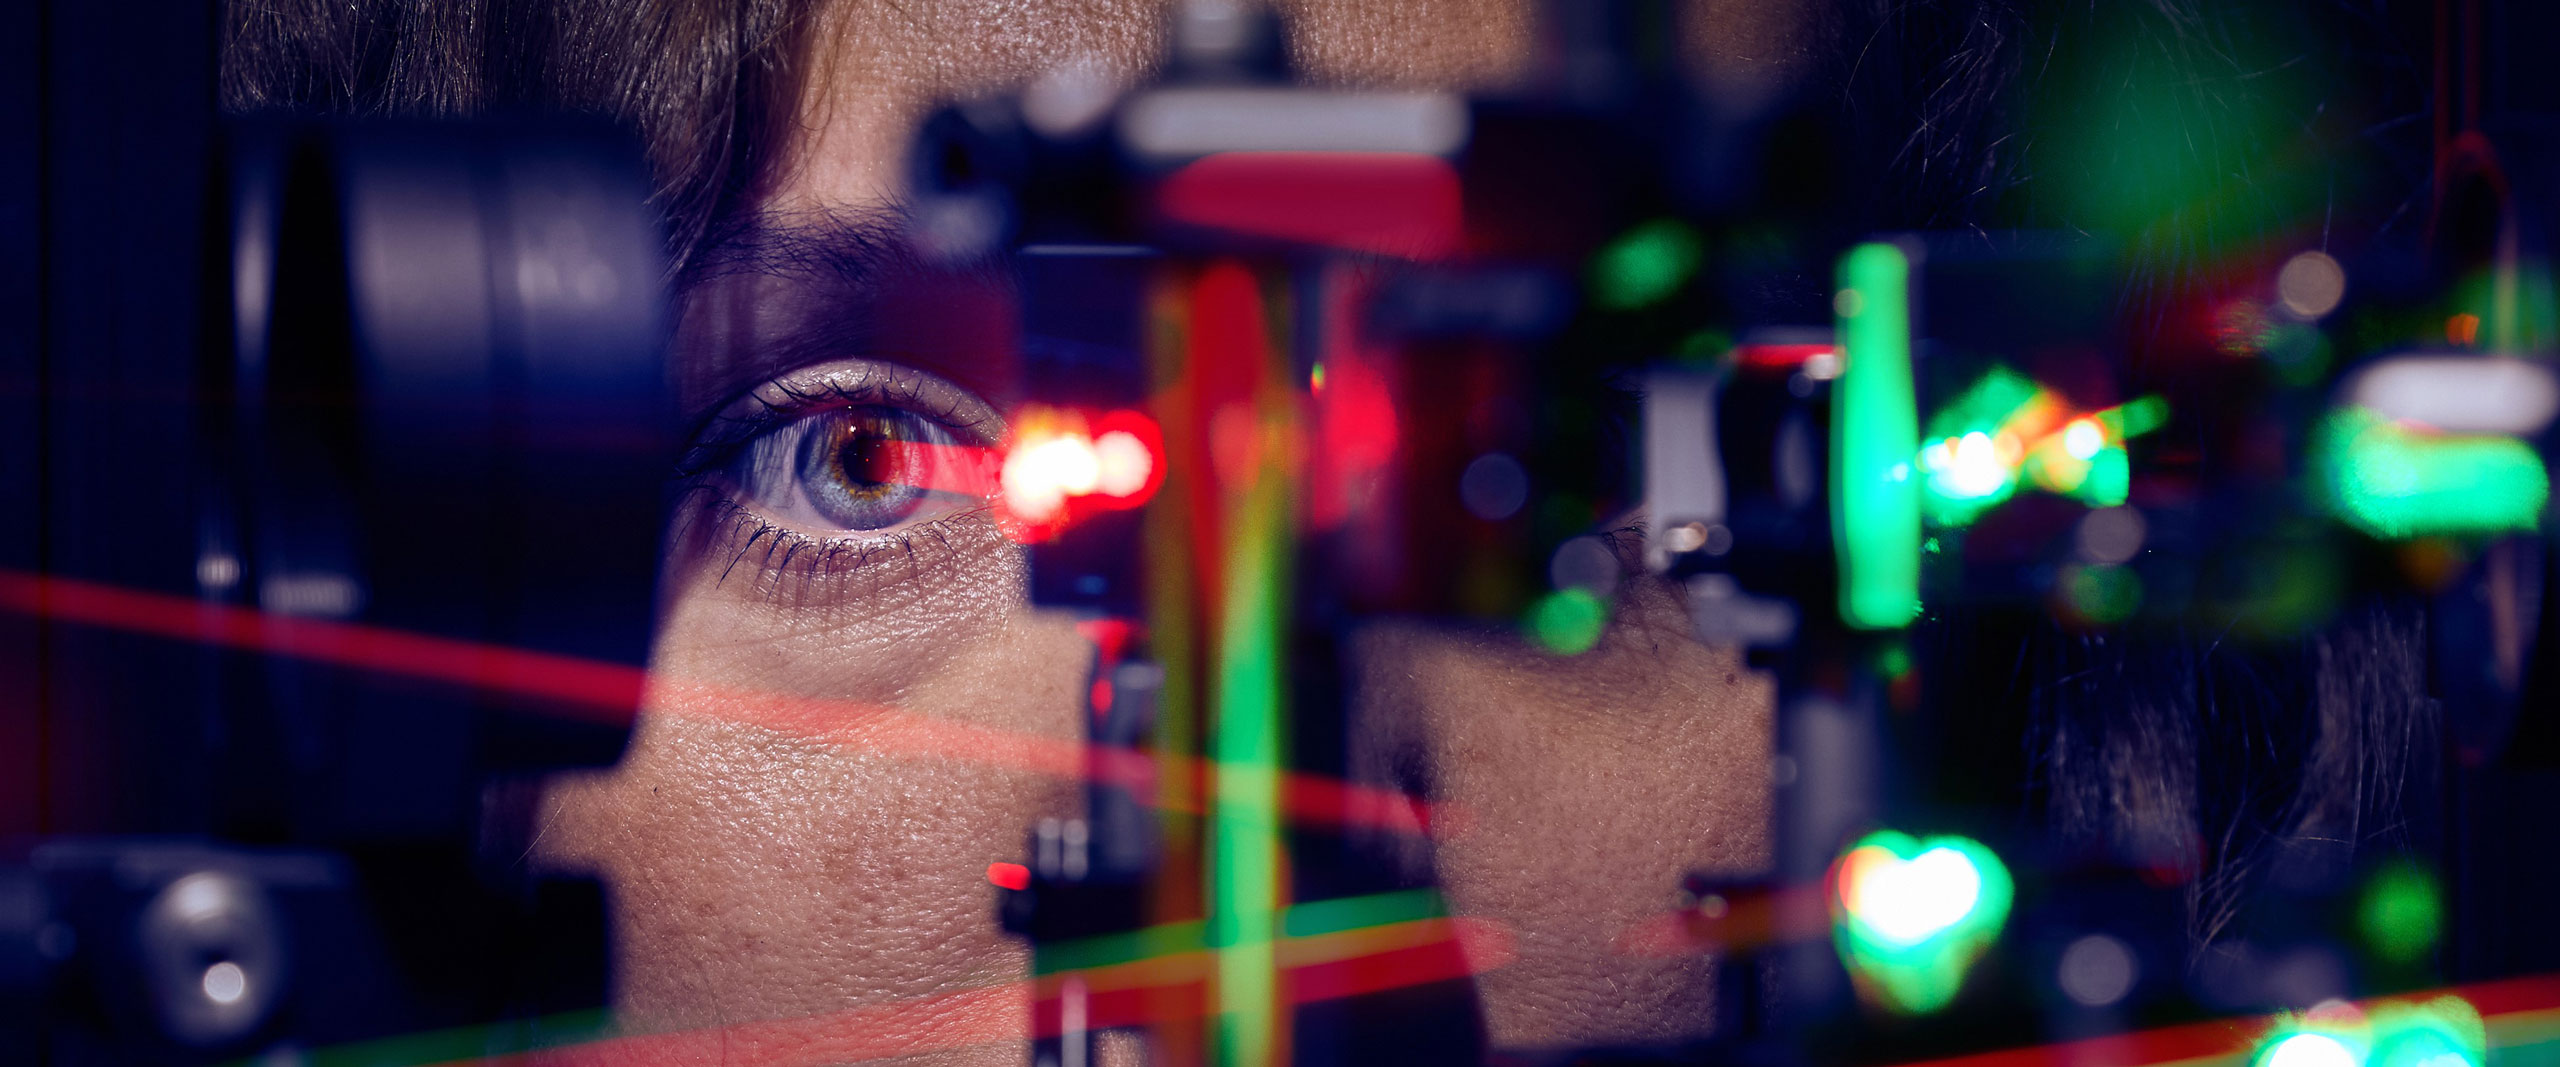 Jenny L. Reiniger bei der Messung am Laser-Ophthalmoskop